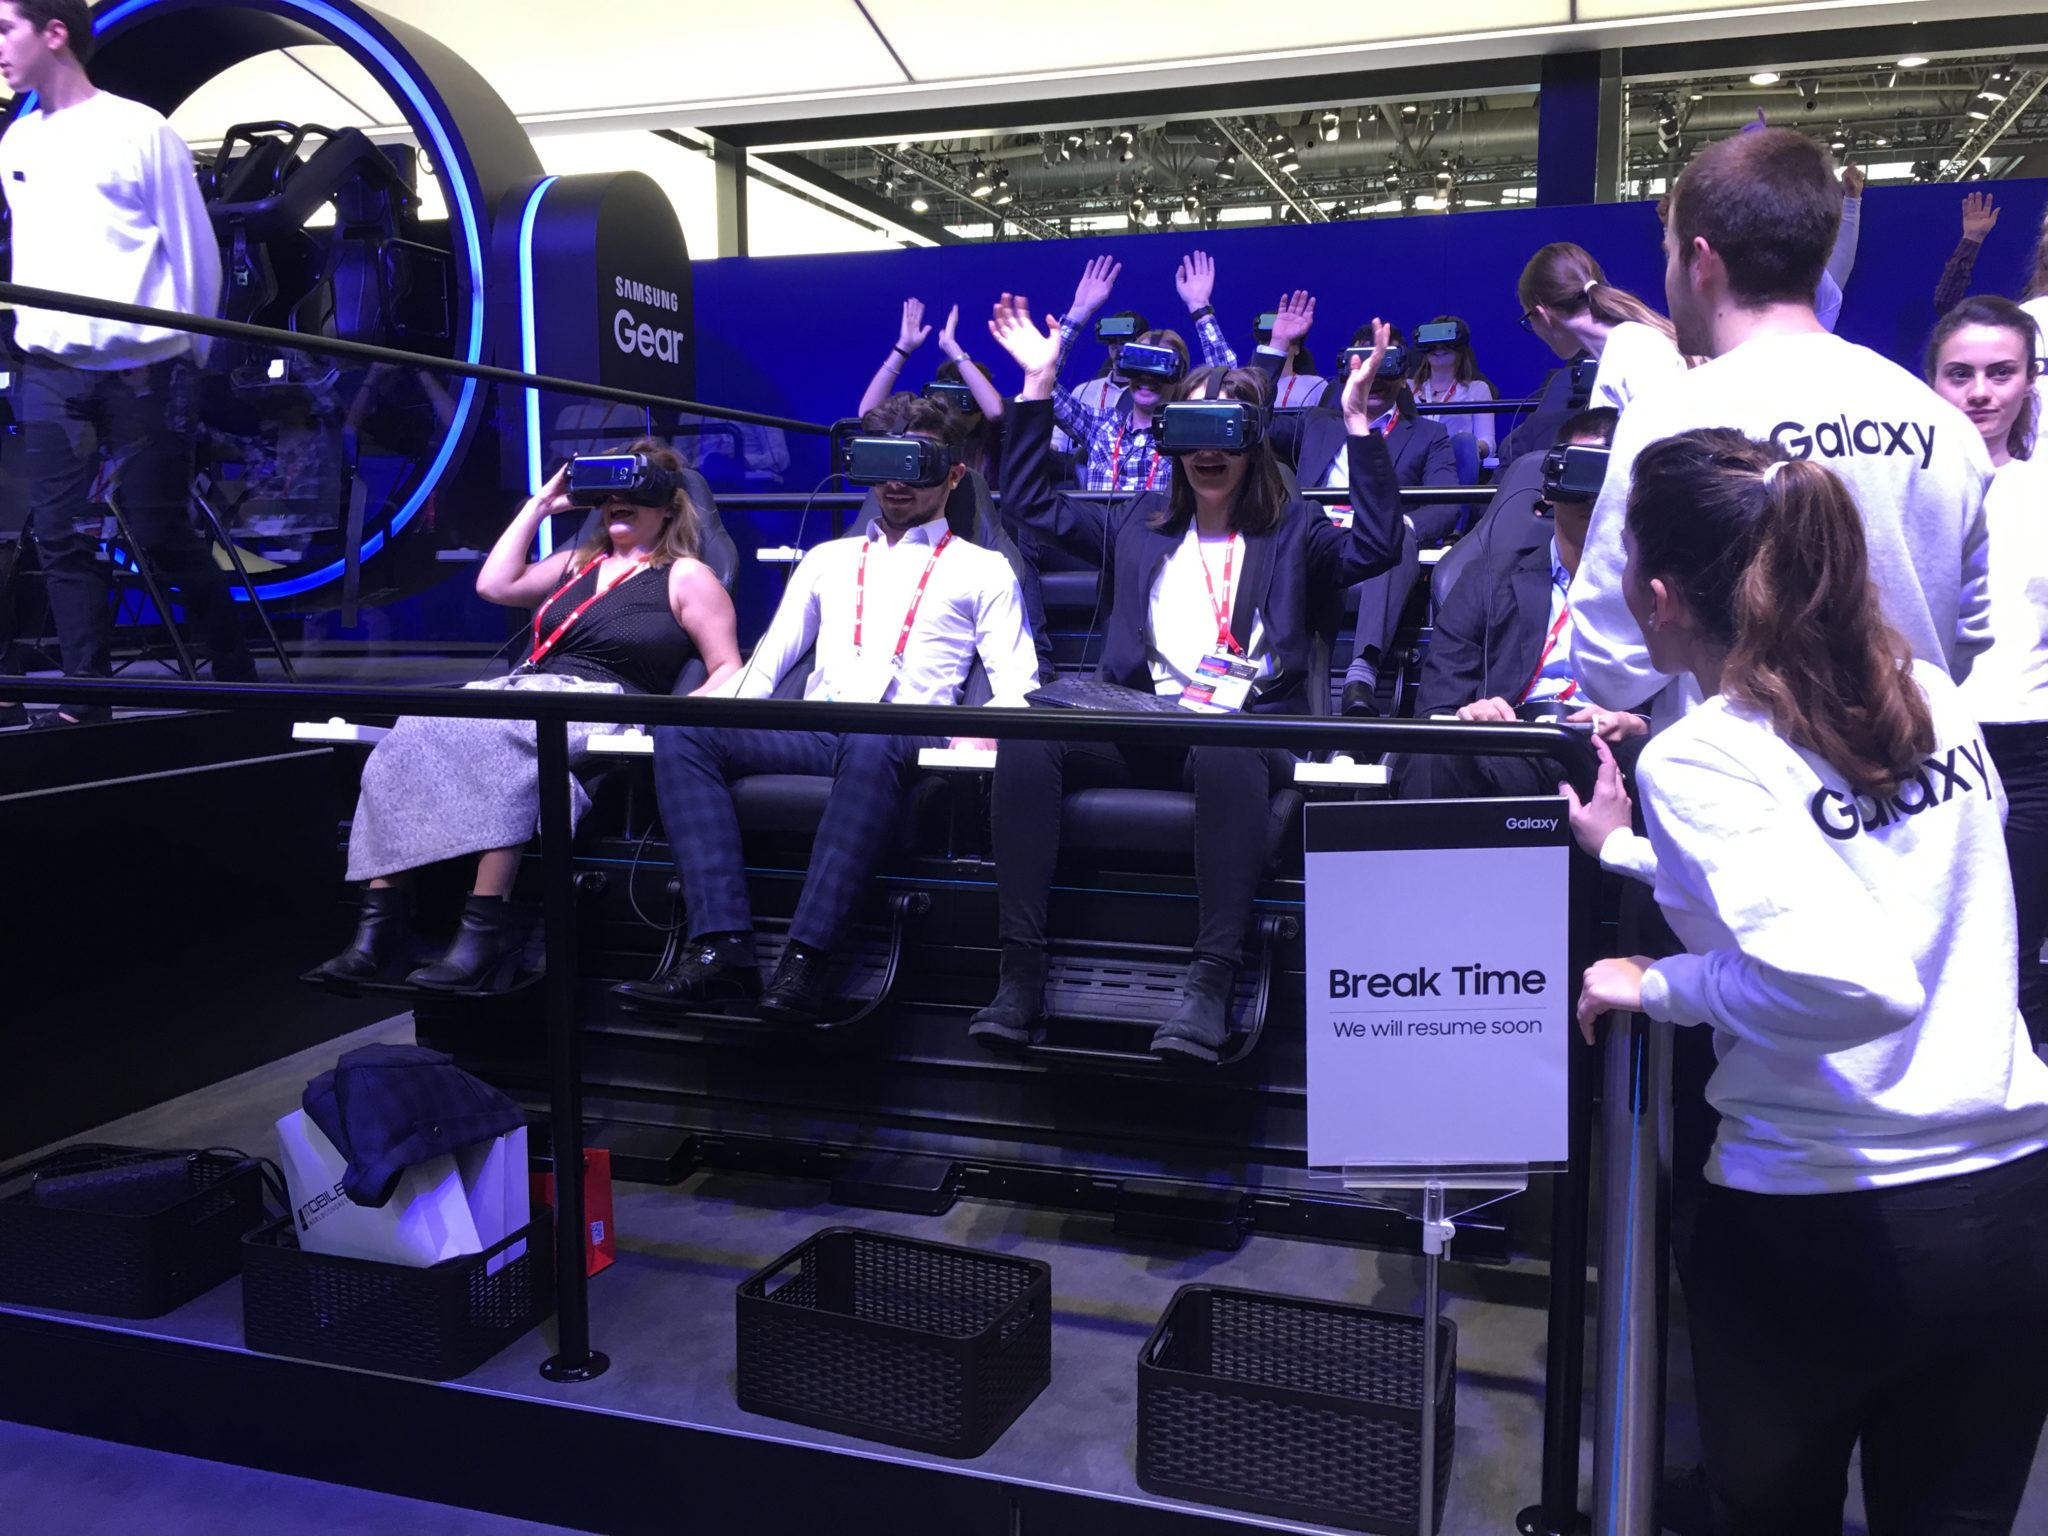 Ludzie siedzący na fotelach z okularami VR